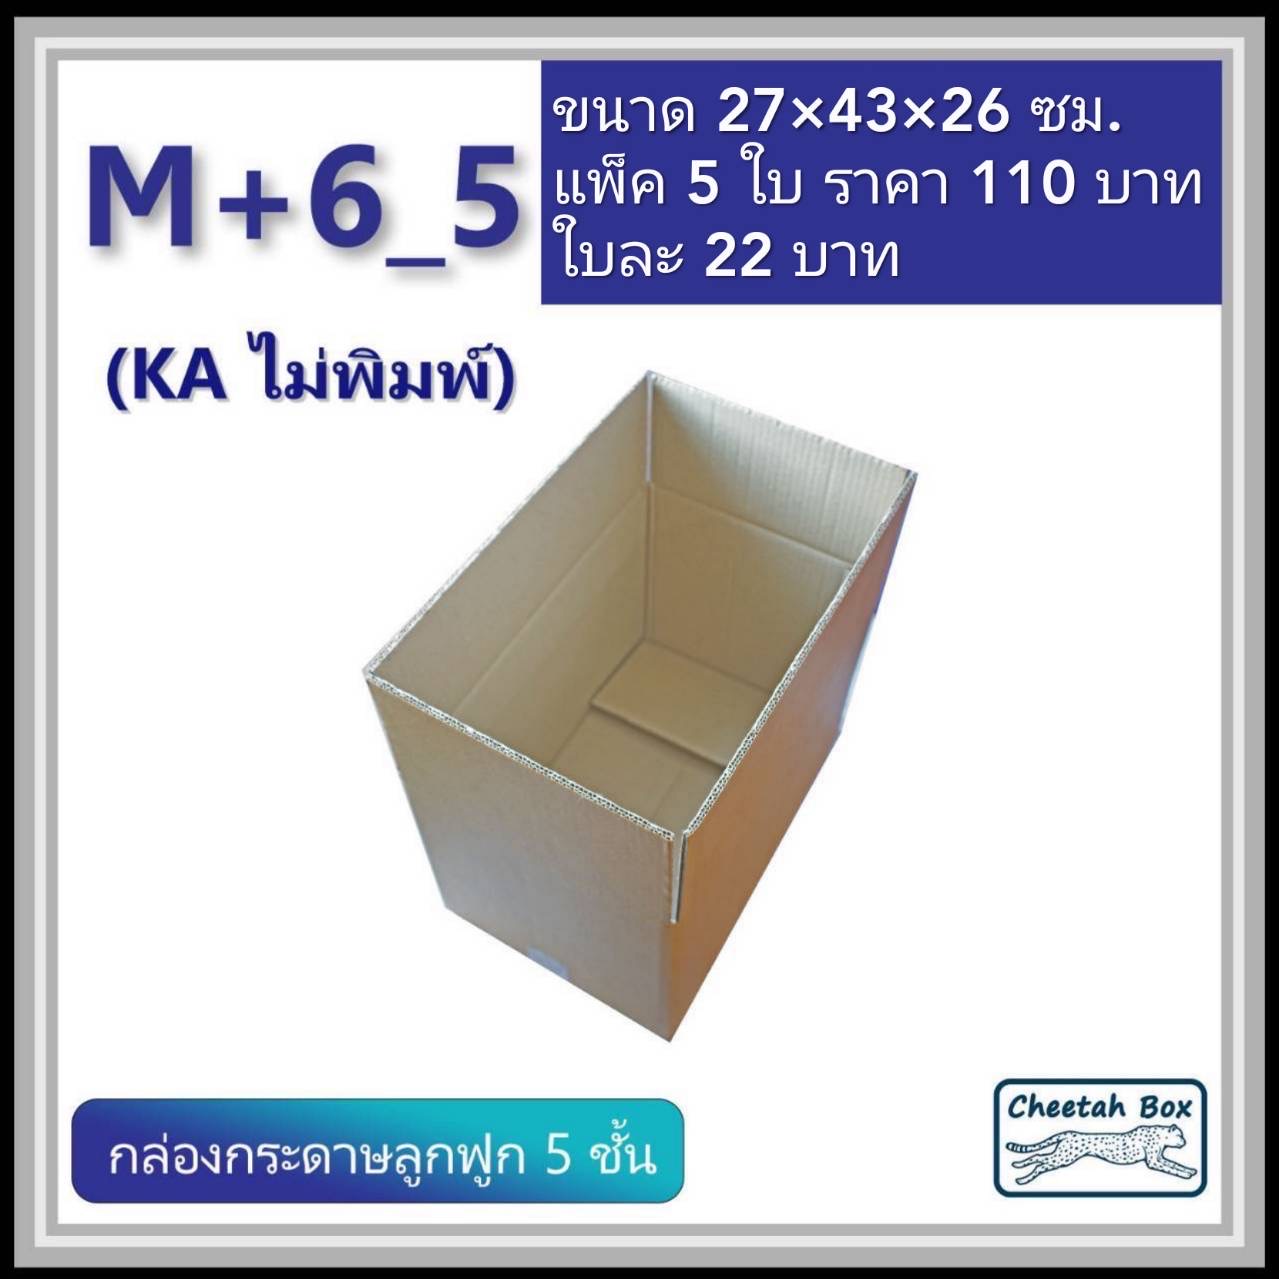 กล่องพัสดุขนาด M เพิ่มความสูง 6 cm รหัส M+6_5  กระดาษ KA 5 ชั้น ไม่พิมพ์ (Post Box) 27W x 43L x 26H cm.